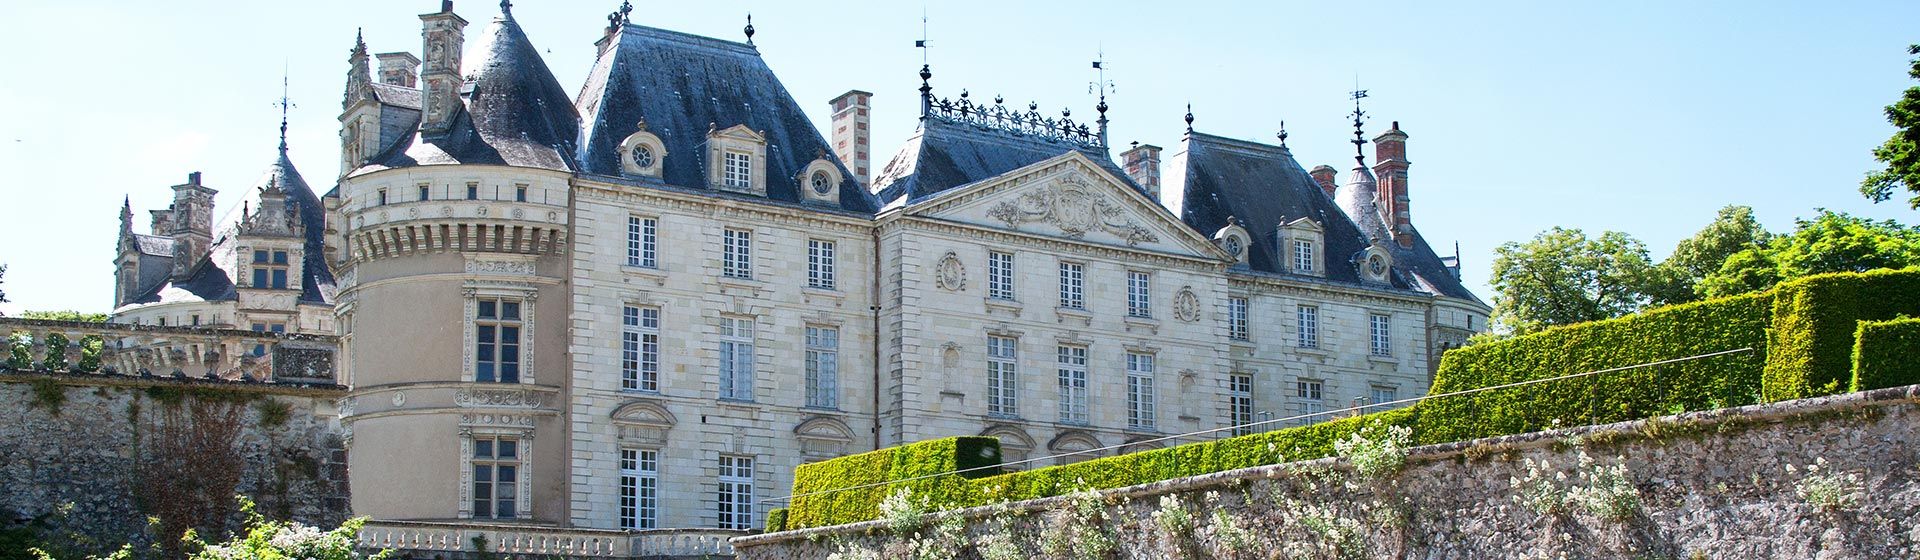 Château de Lude